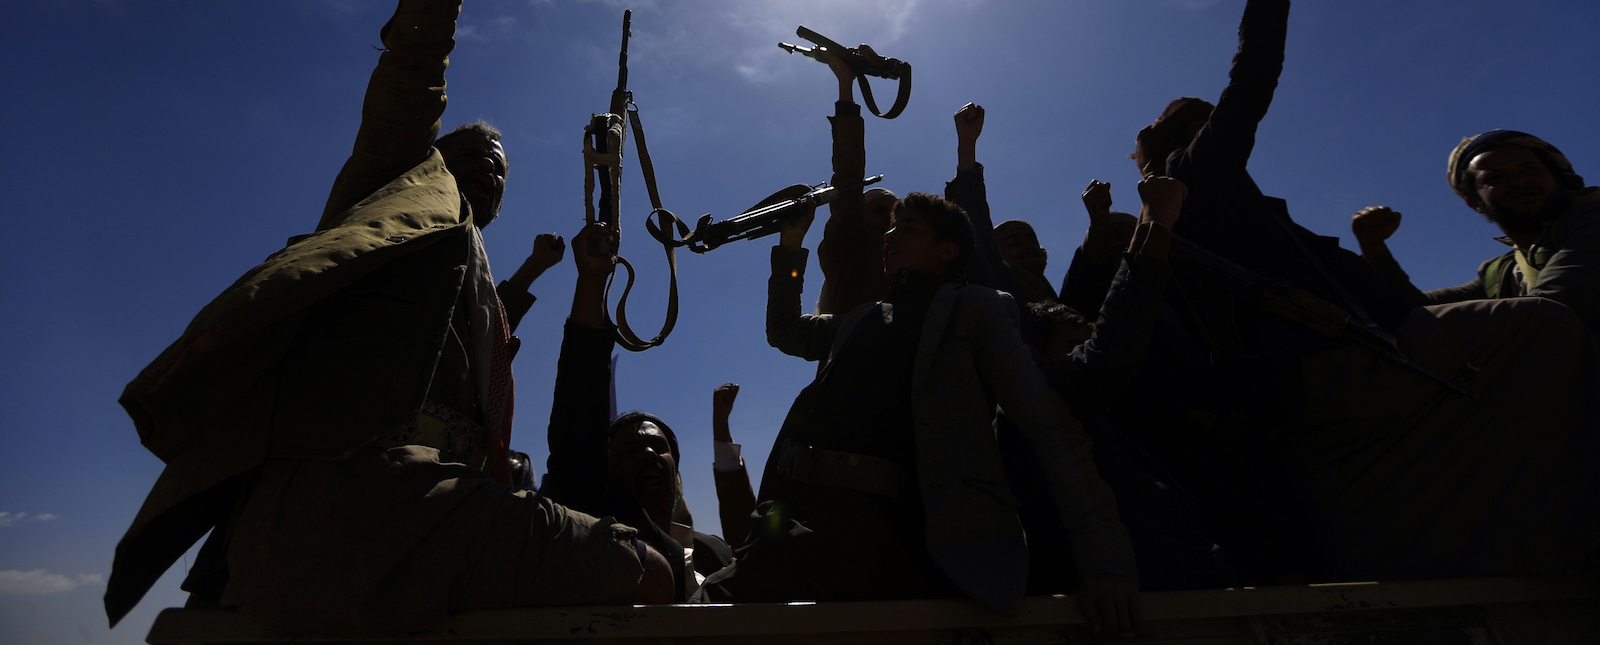 Armed men in Yemen (Photo: Mohammed Huwais via Getty)